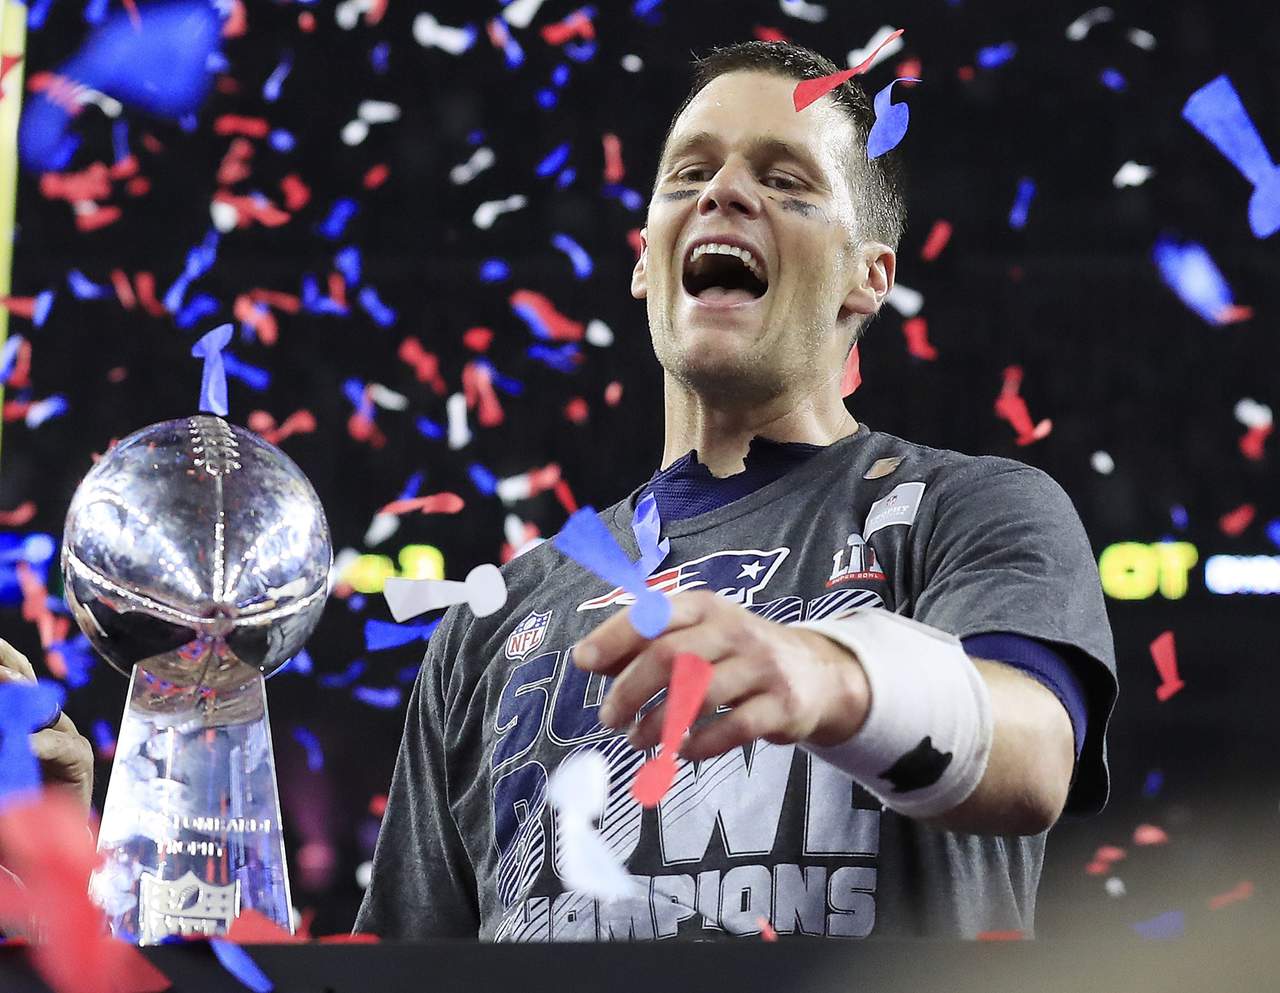 El mariscal de campo de Patriots de Nueva Inglaterra, Tom Brady, fue elegido como el Jugador Más Valioso del Súper Tazón LI, luego de ganar su quinto trofeo Vince Lombardi al vencer 34-28 a Halcones de Atlanta. (AP)